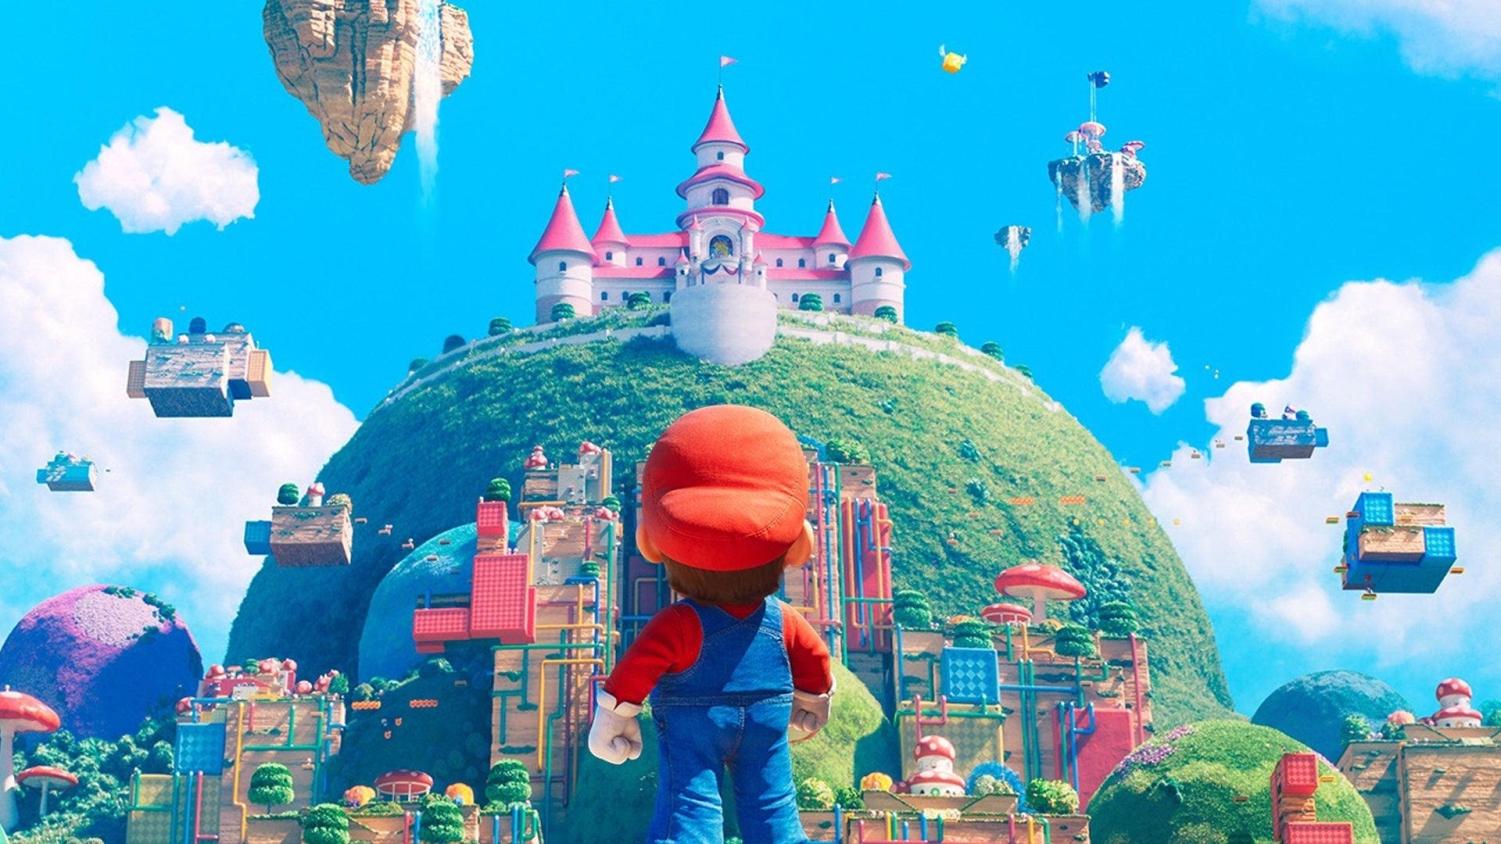 Nintendo on Mario movie success and negative reviews